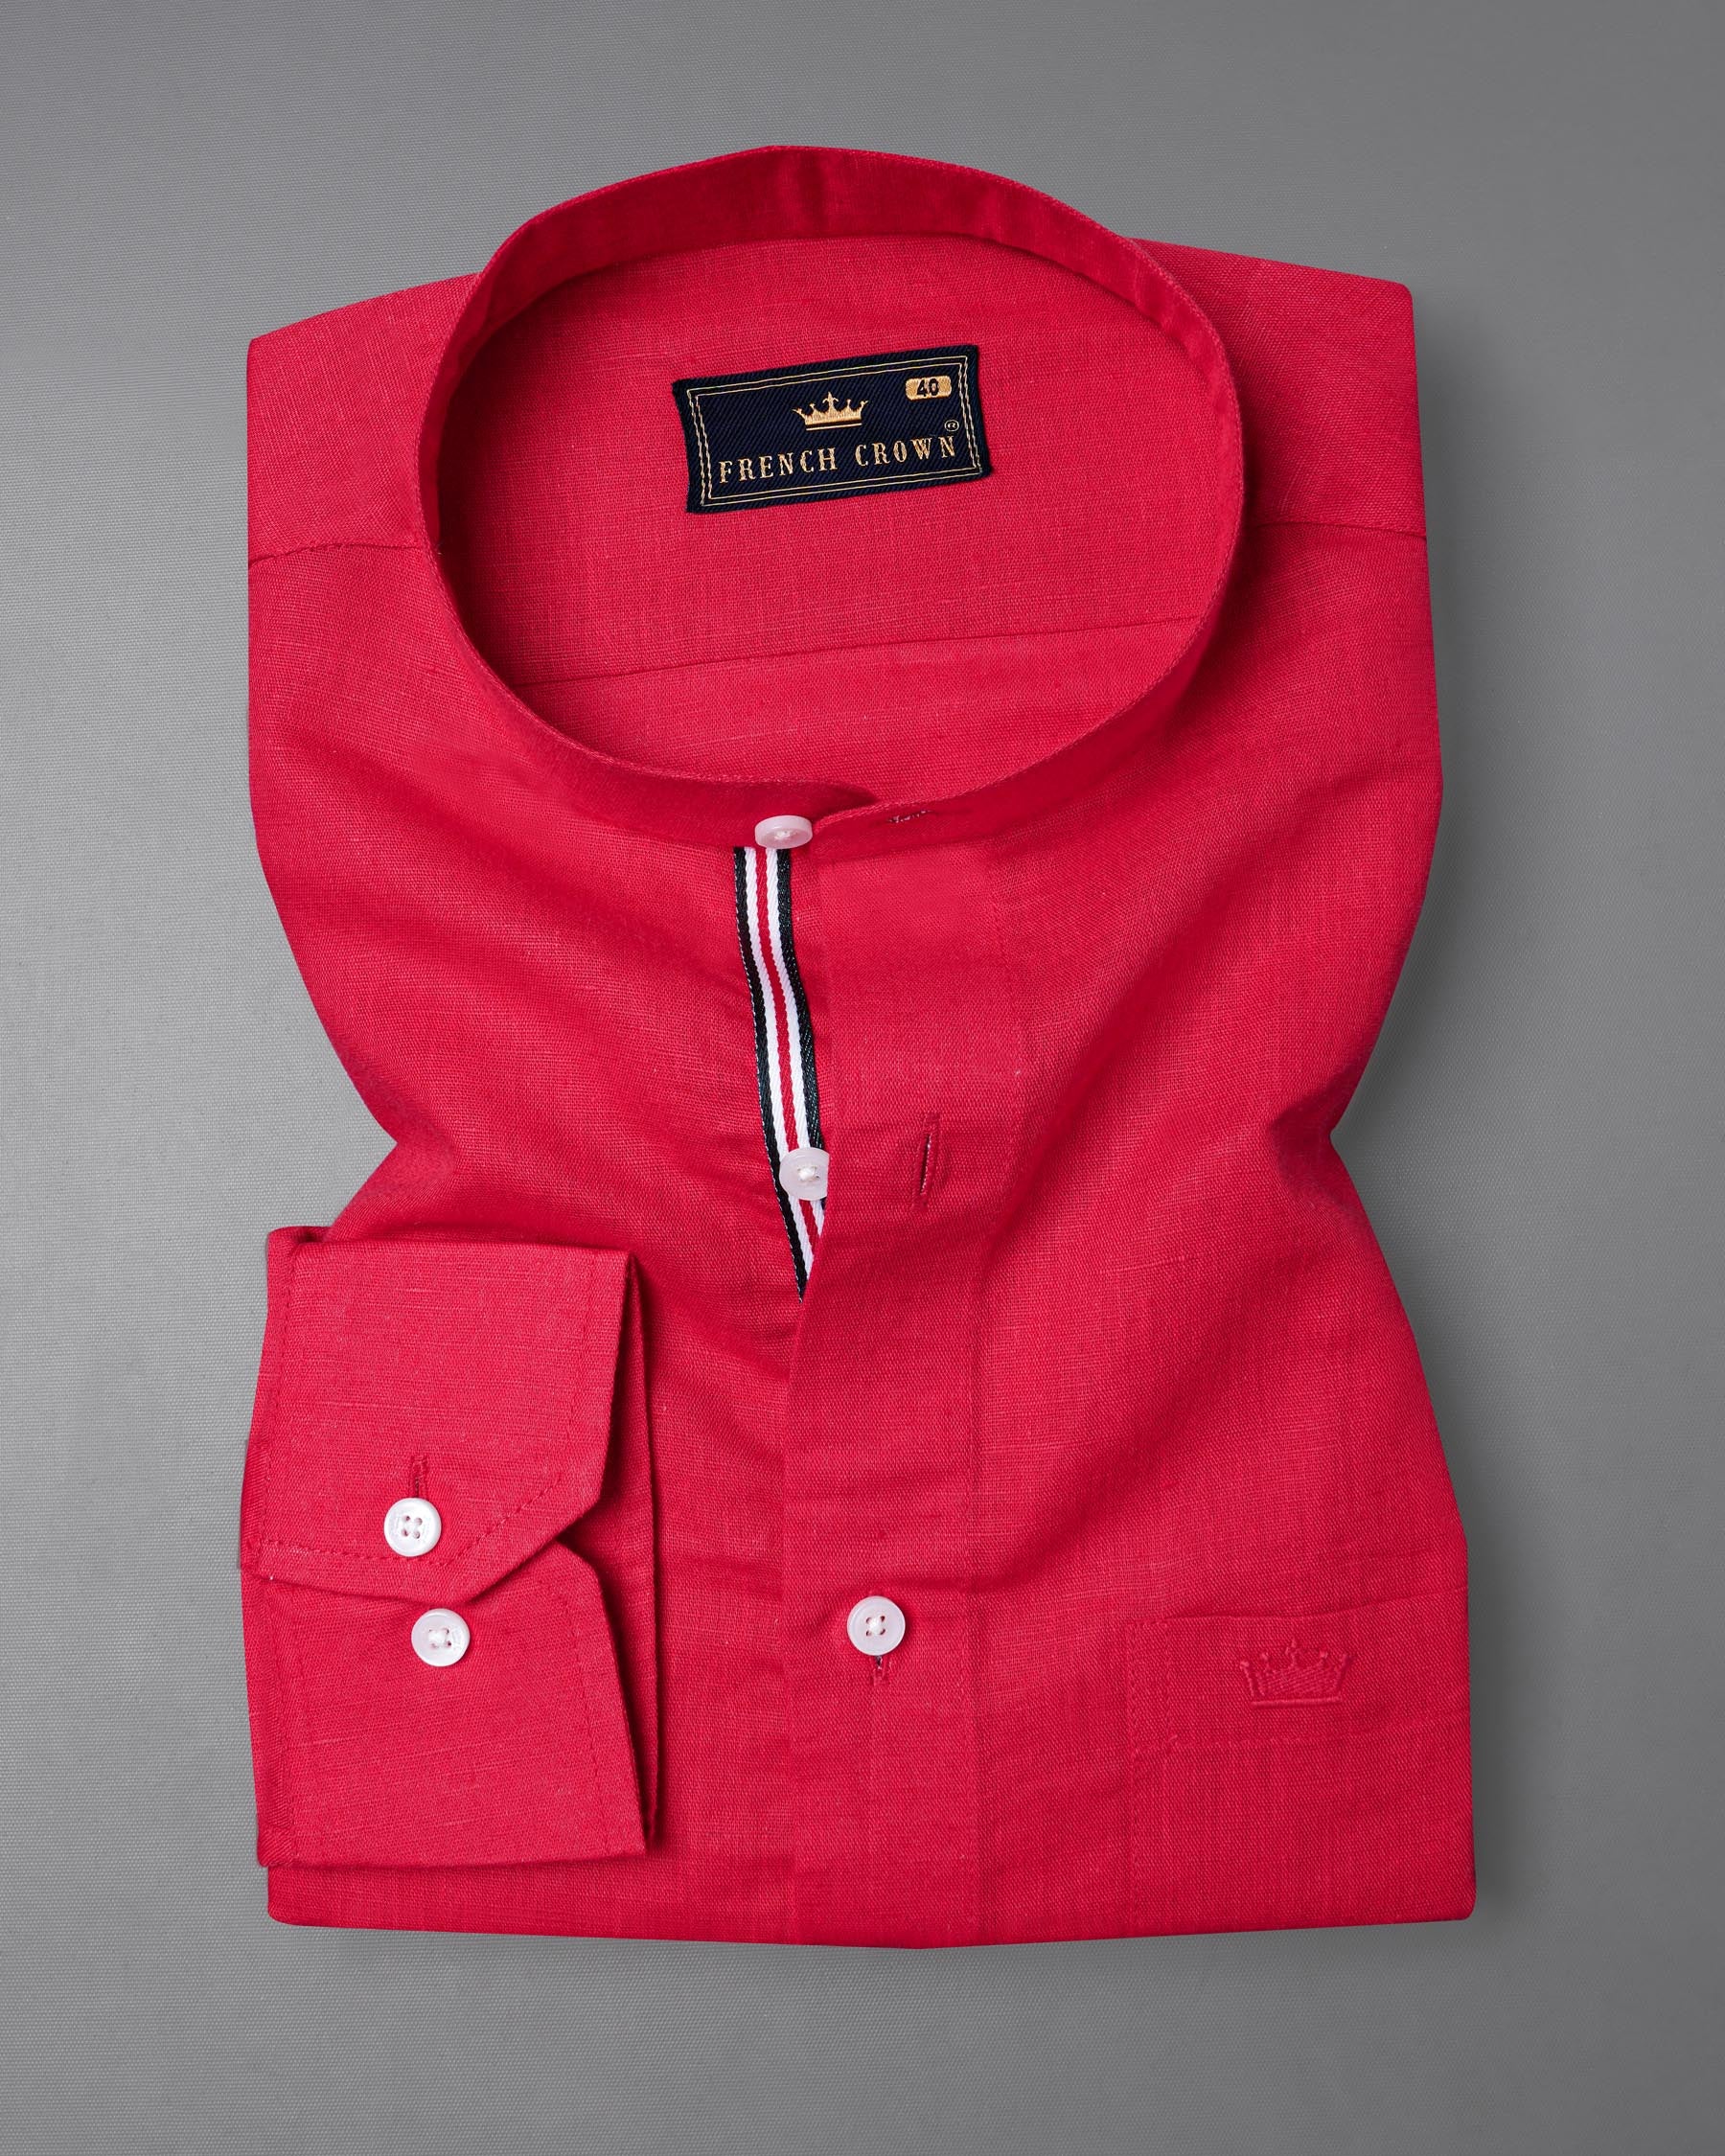 Rich Carmine Red Luxurious Linen Shirt